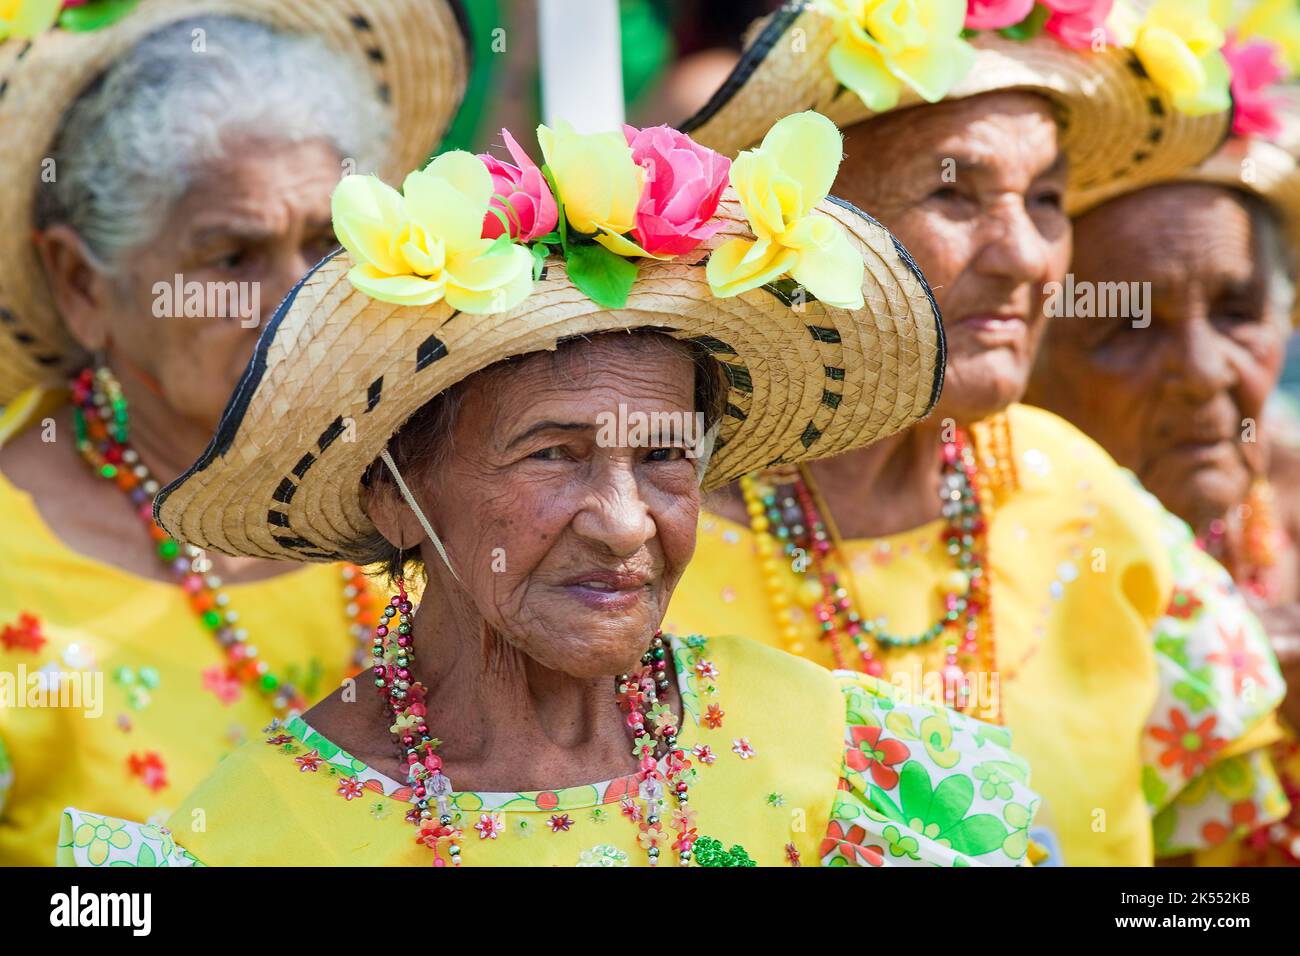 Colombie, Carnaval dans le nord de la ville de Barranquilla est le plus important dans le pays et célèbre dans le monde. Les nombreuses défilés et la musique festi Banque D'Images